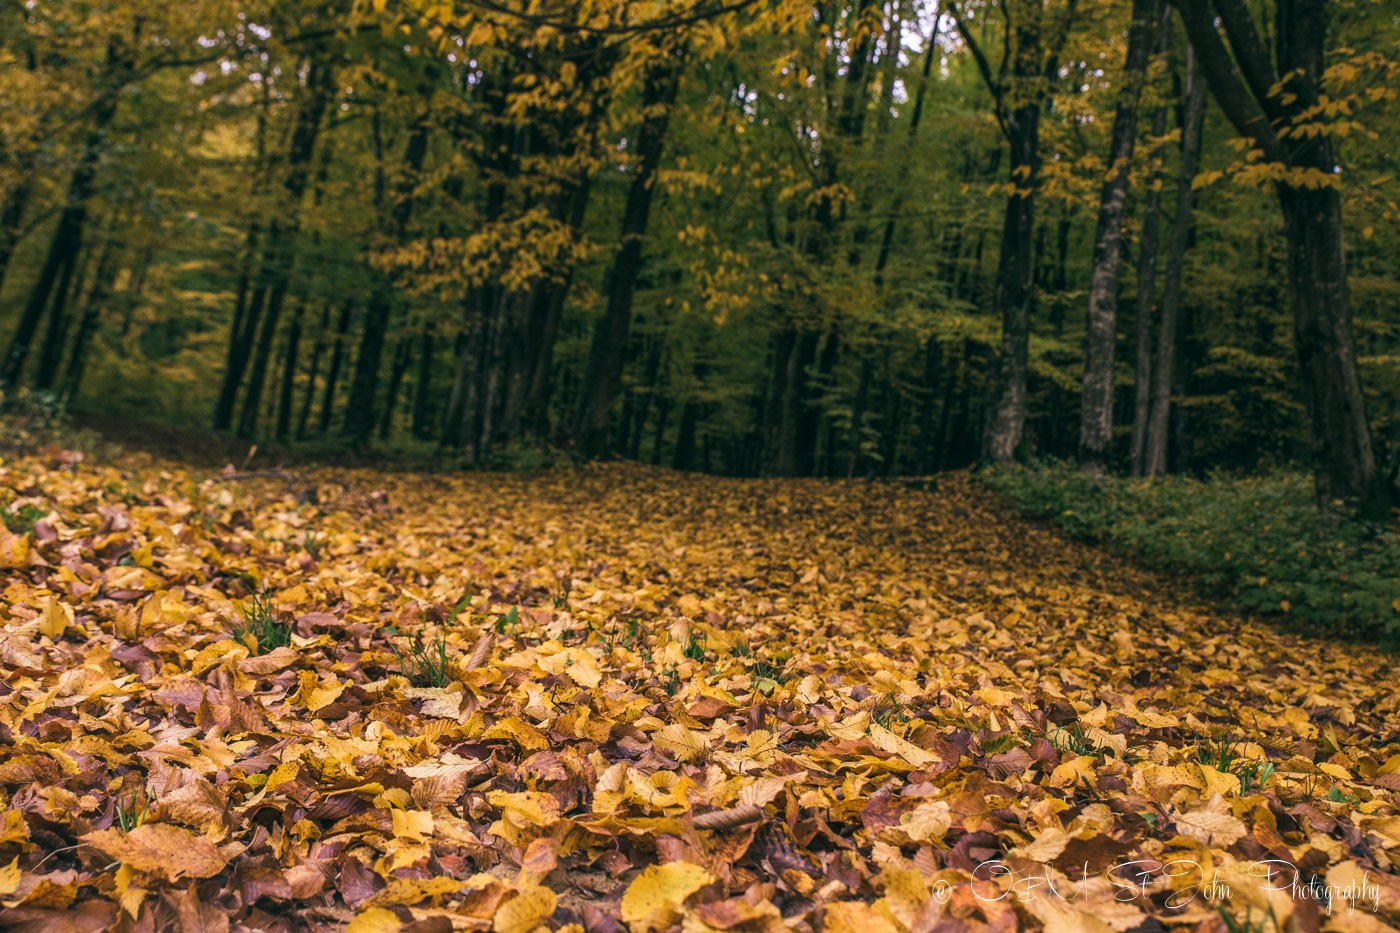 Carpet of fallen leaves. Maramures. Romania